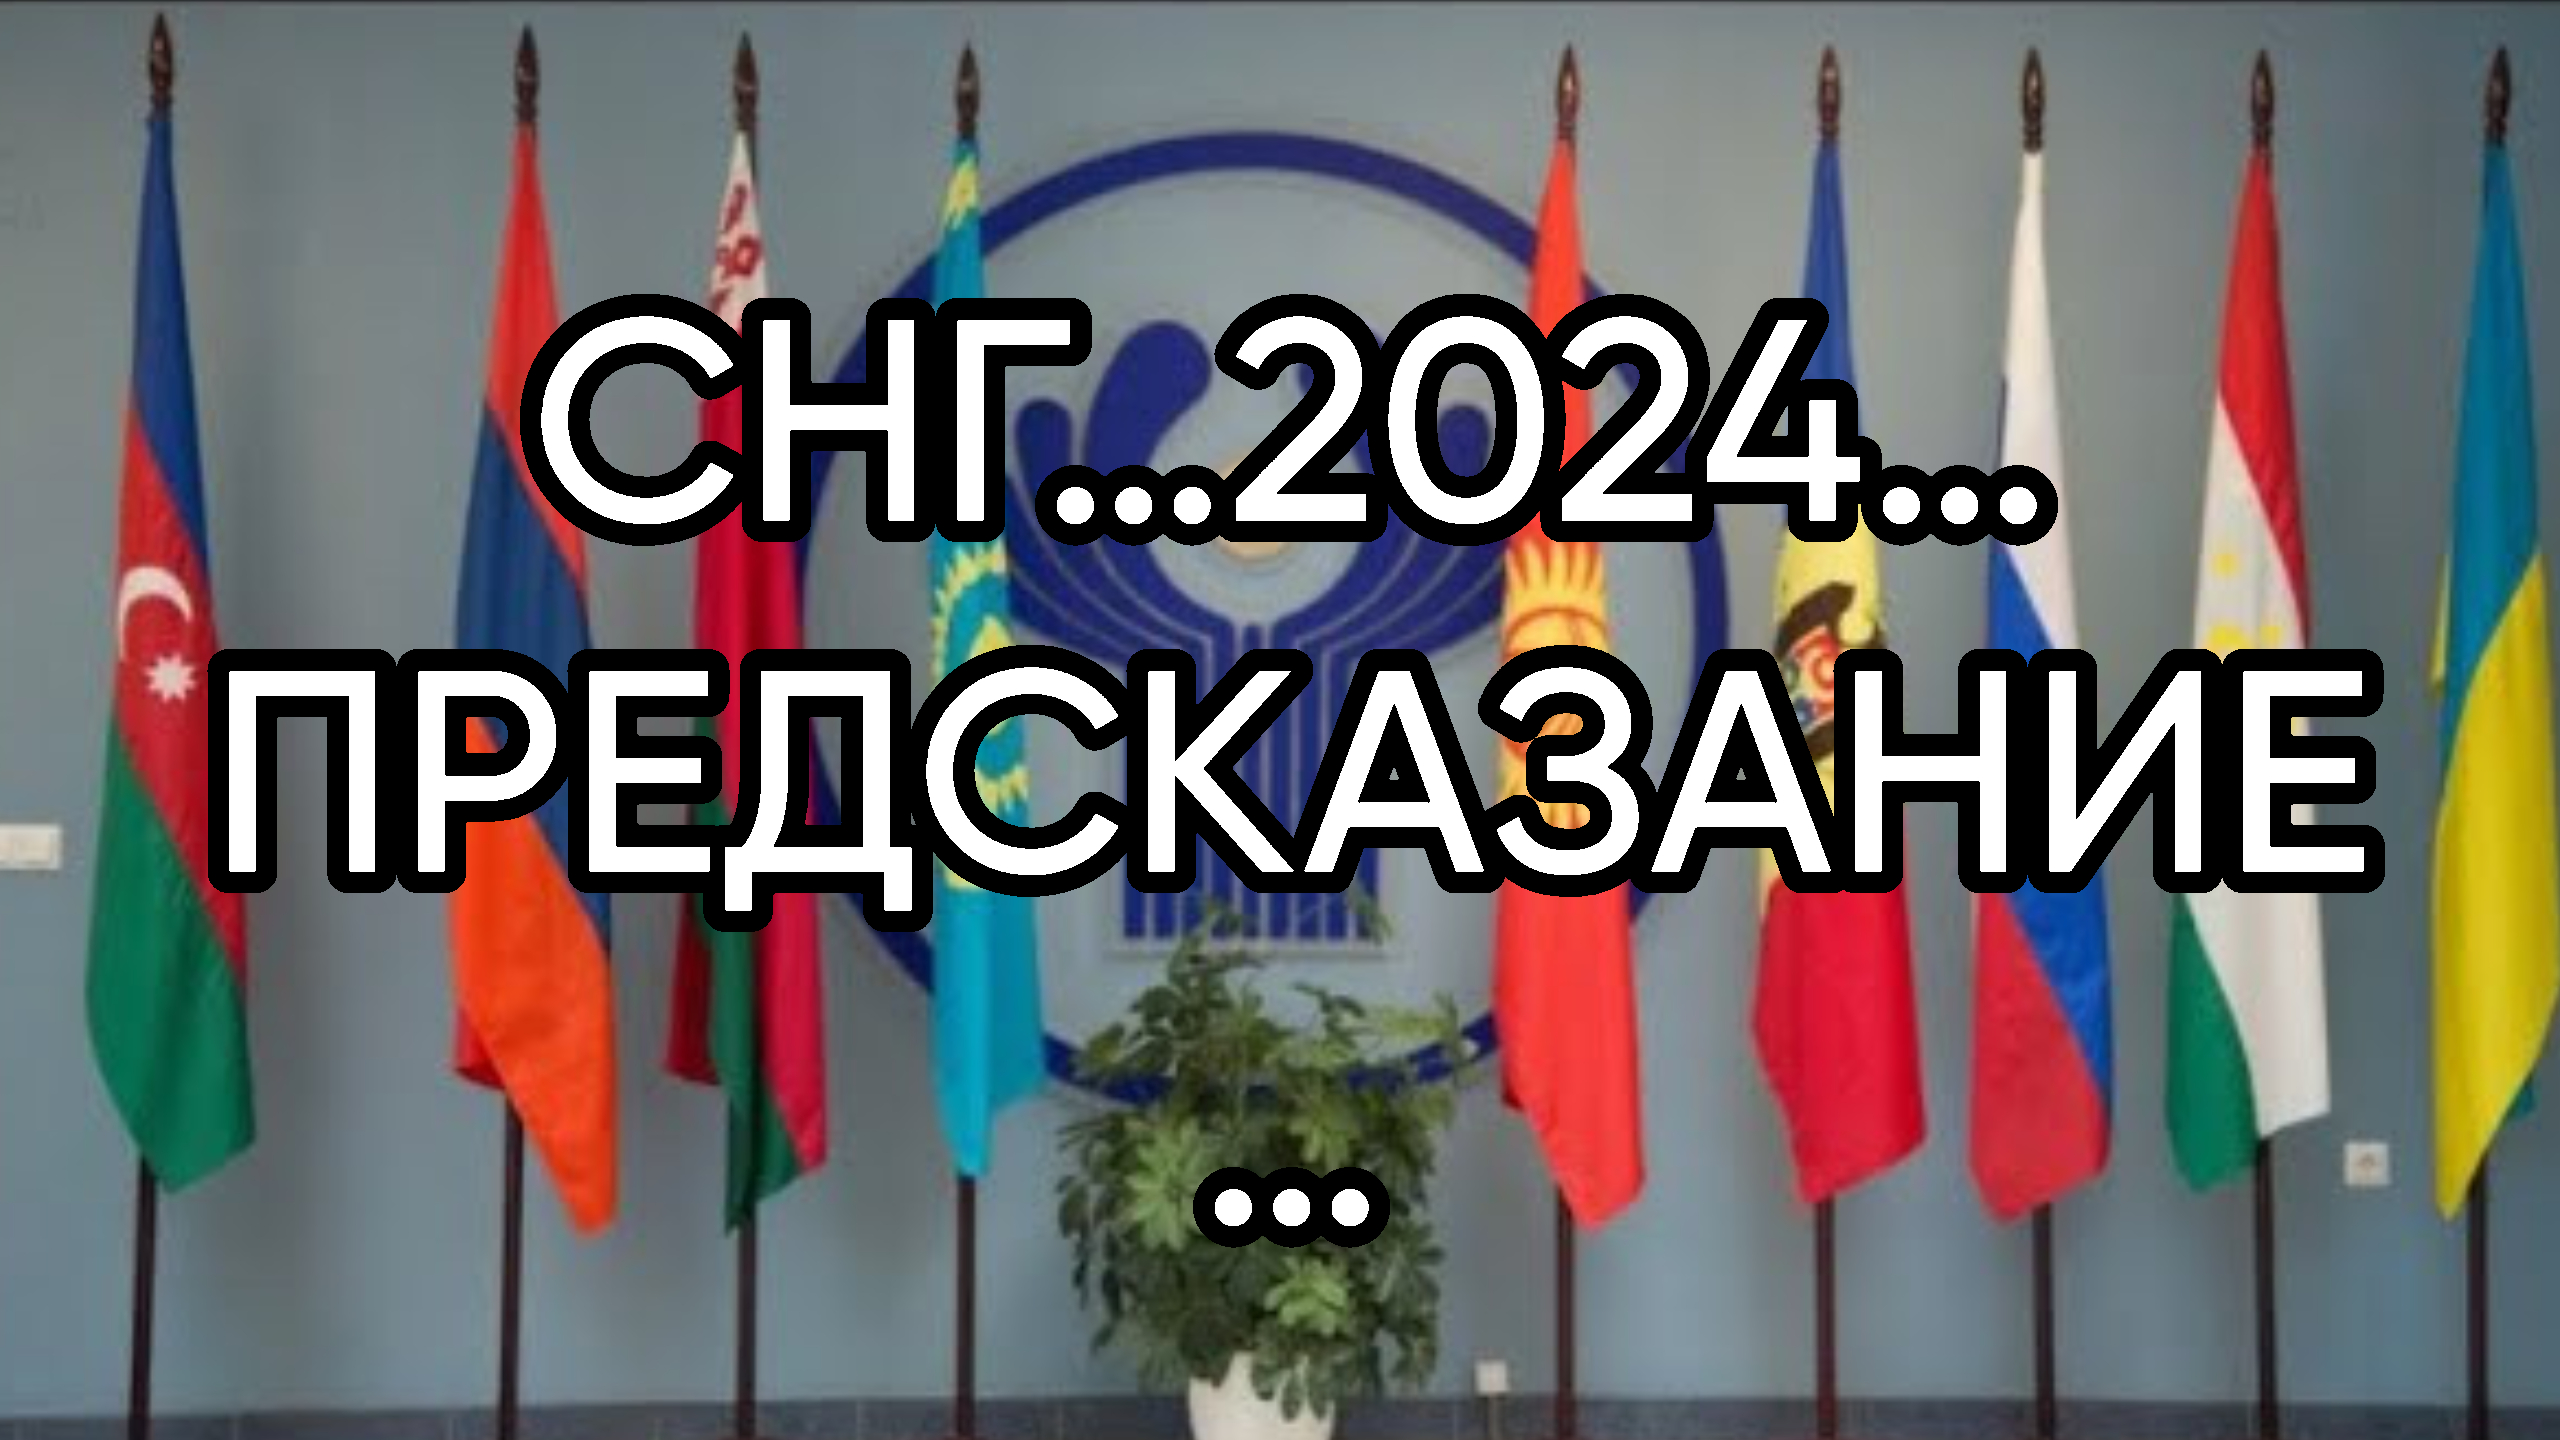 Предсказания 2024 индия